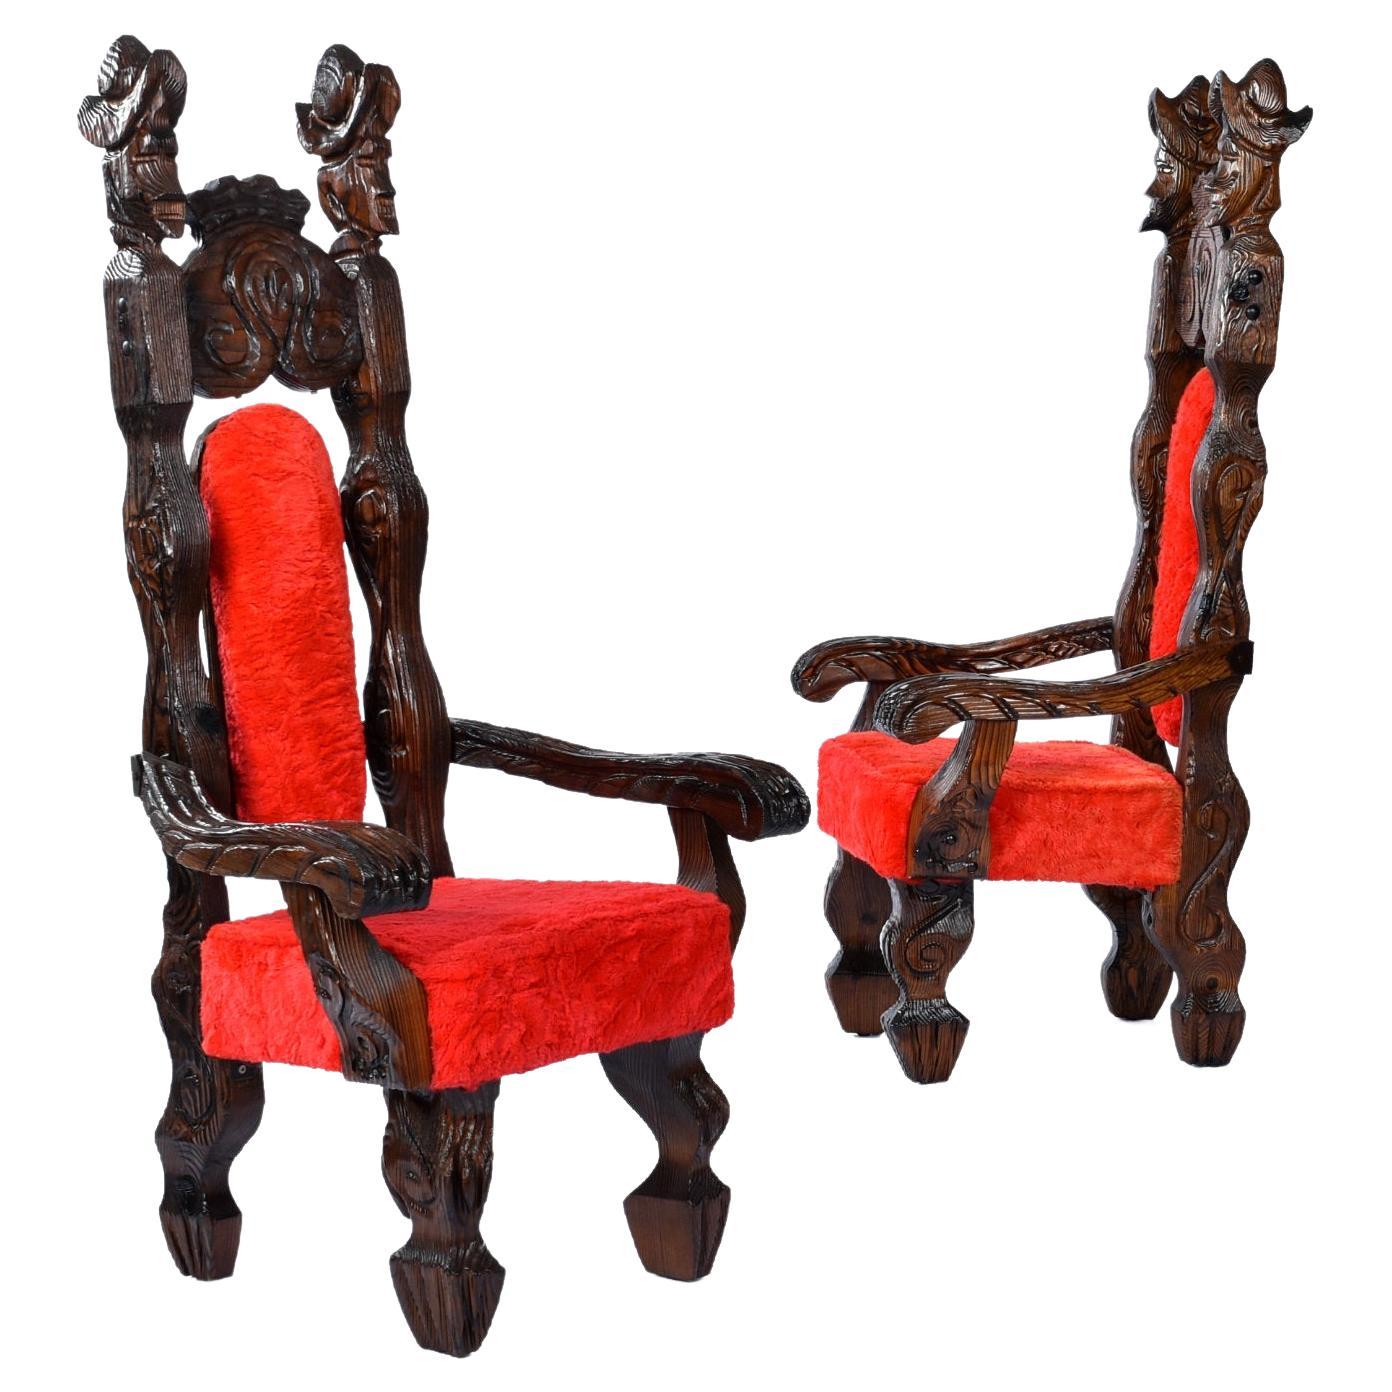 Paire de fauteuils trône Witco Conquistador restaurés en fourrure rouge d'origine. Ces chaises sont absolument sauvages, dans le meilleur sens du terme. Le tissu original en fourrure rouge a un poil épais. Cette tapisserie rouge vif ajoute une